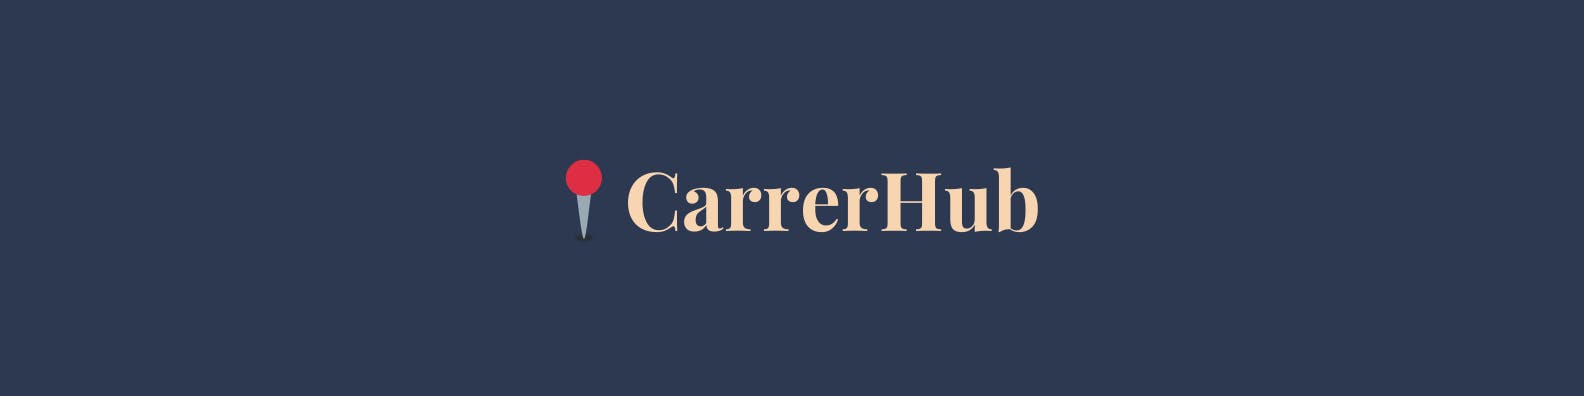 CareerHub media 1